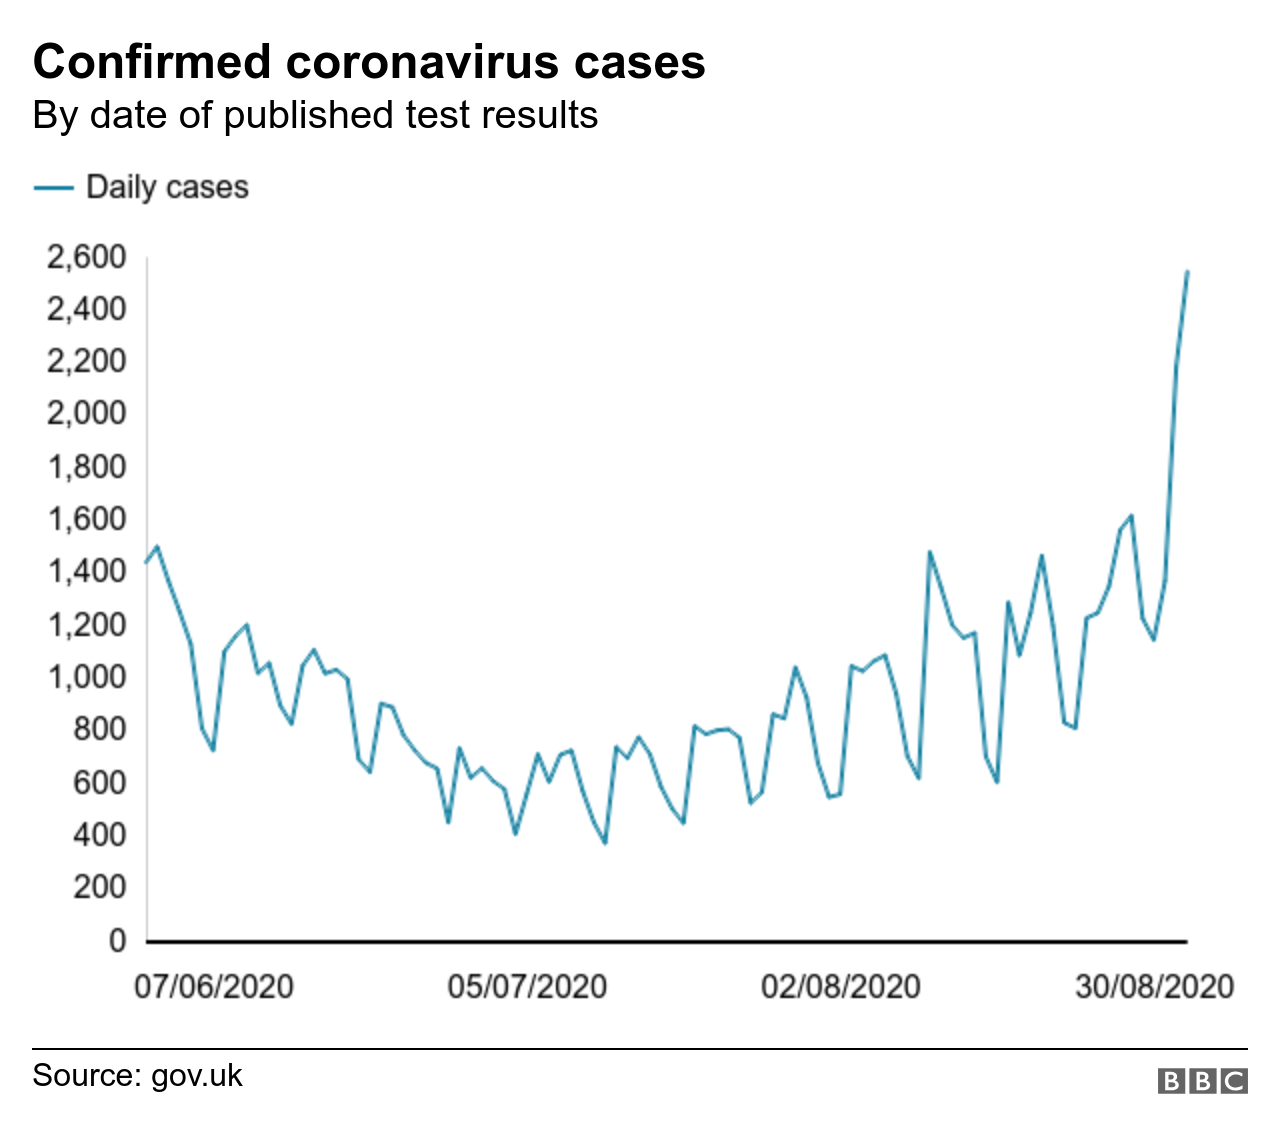 диаграмма, показывающая подтвержденные случаи коронавируса по дате тестирования, с июня по август 2020 г.